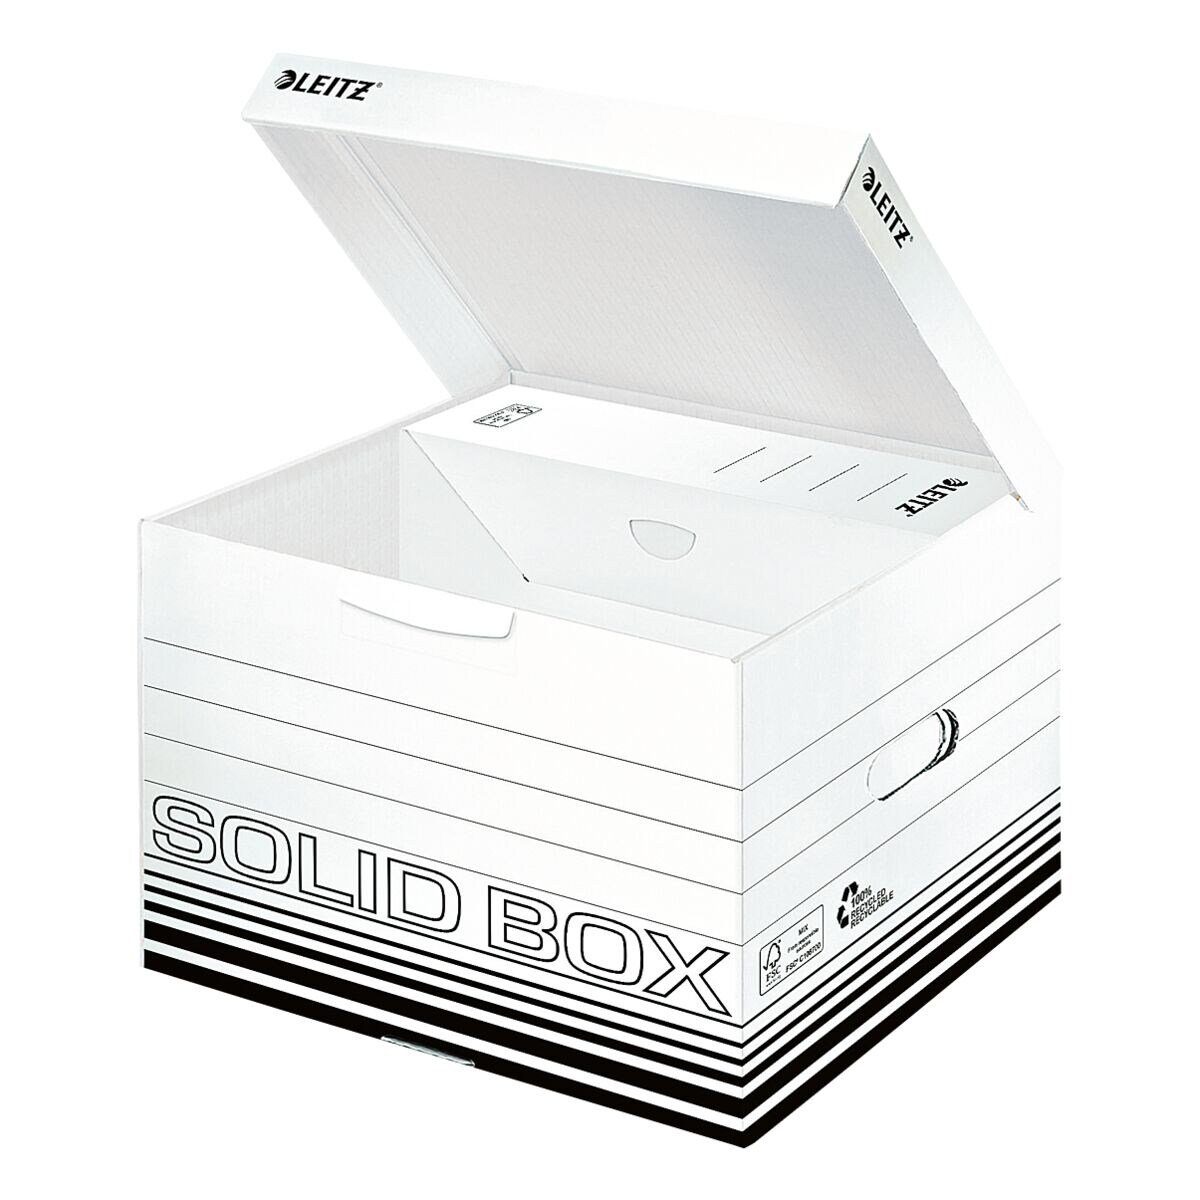 LEITZ Aufbewahrungsbox Solid Box M (10 St), mit Klappdeckel und doppeltem Boden